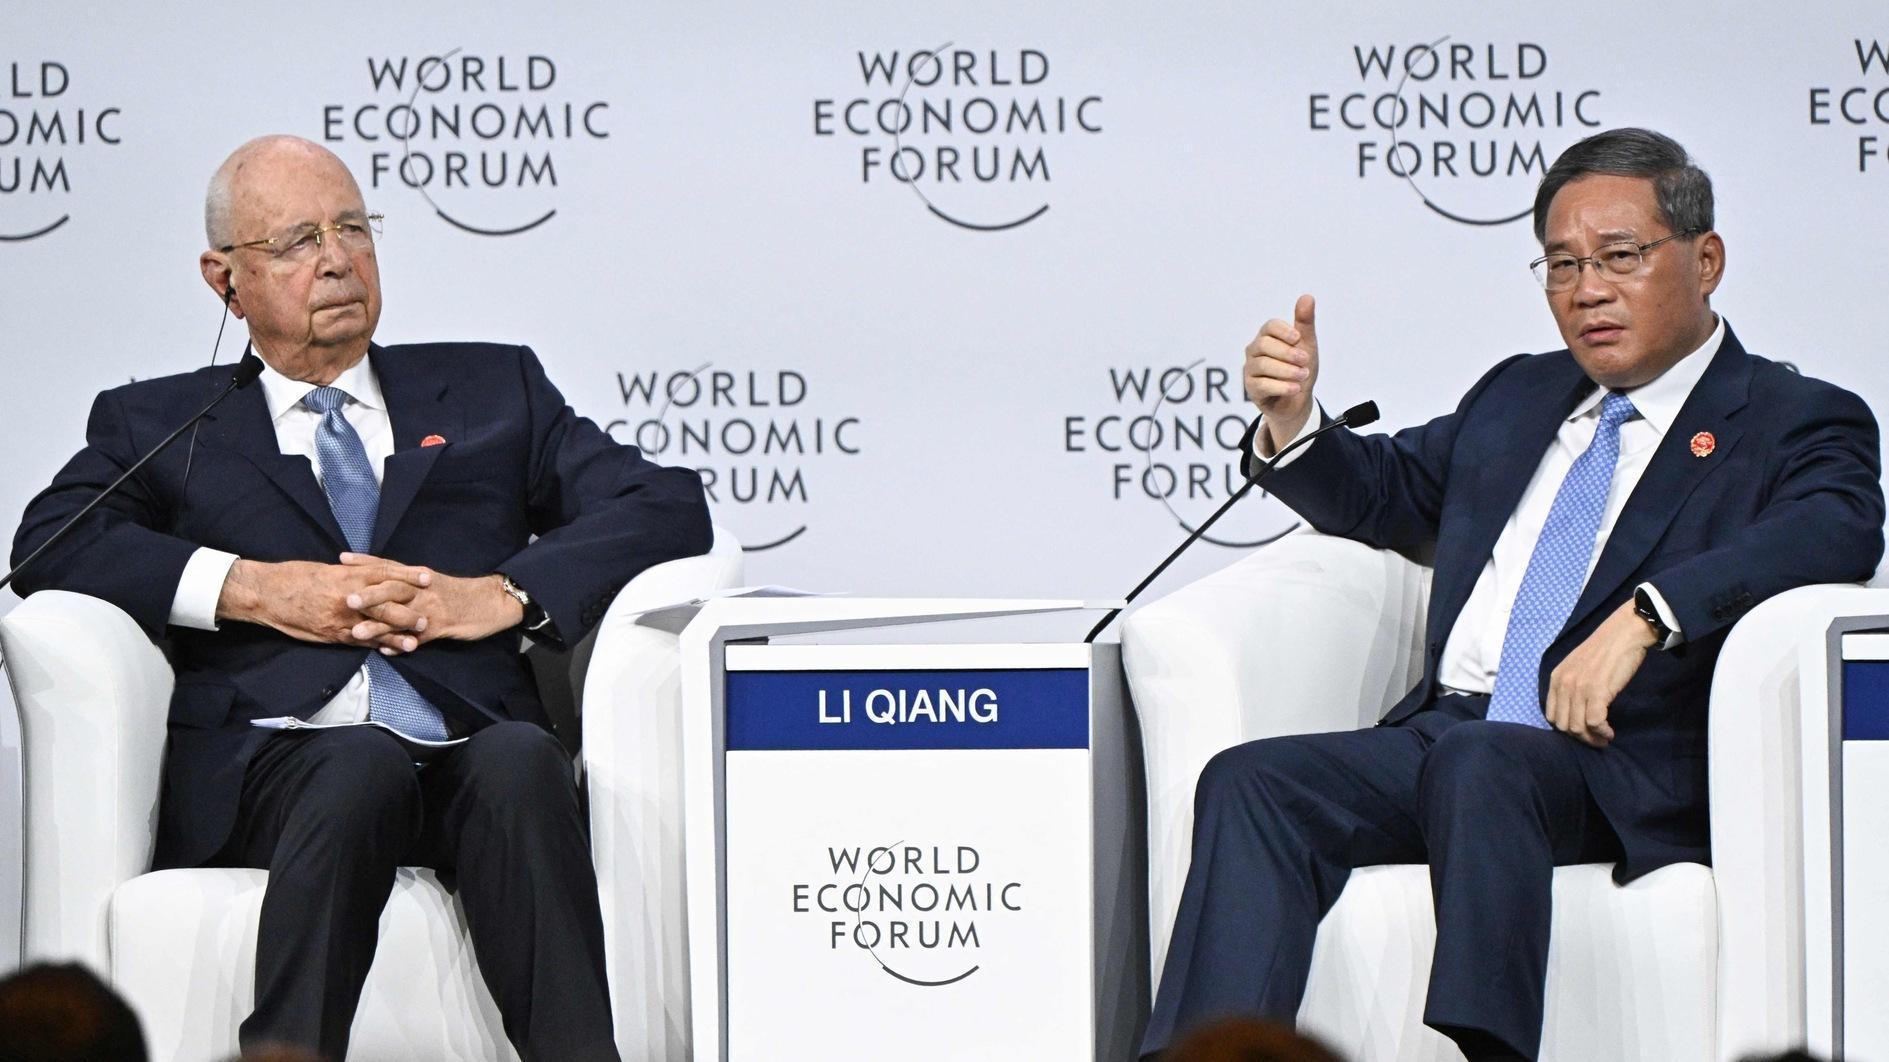 China premier calls to oppose decoupling at economic forum